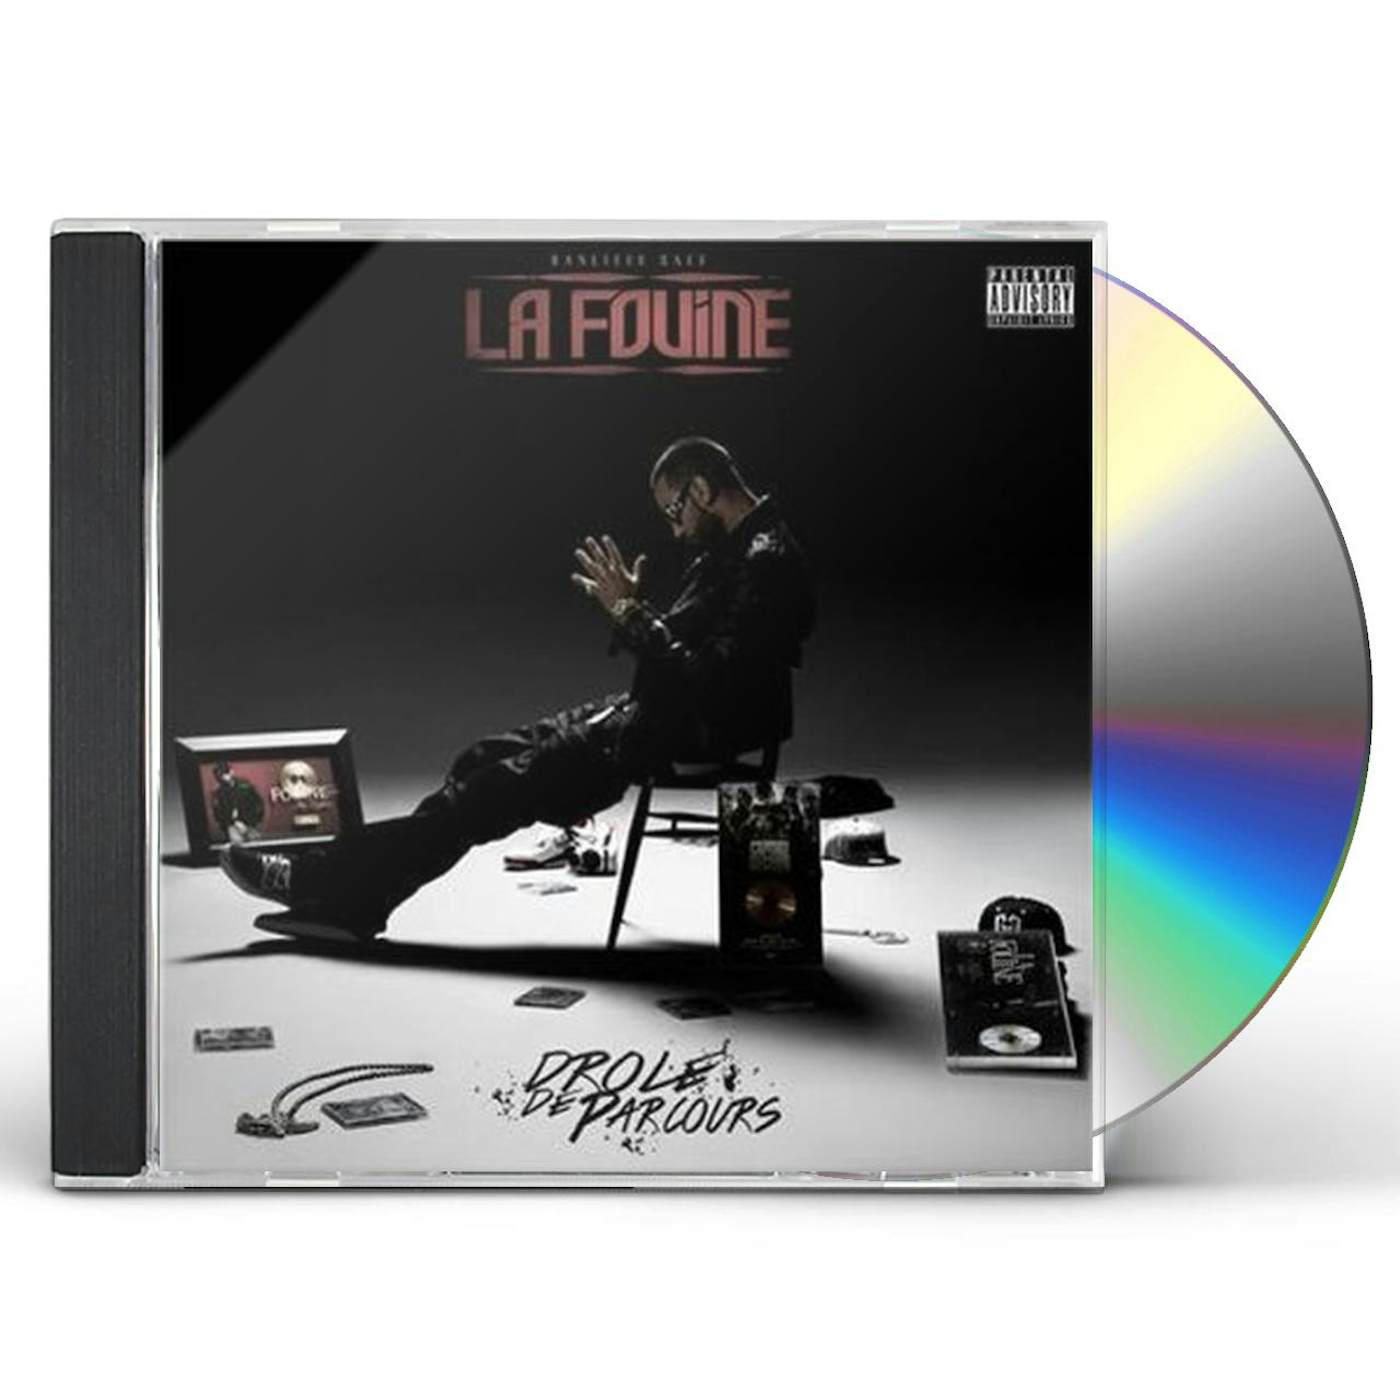 La Fouine DROLE DE PARCOURS CD